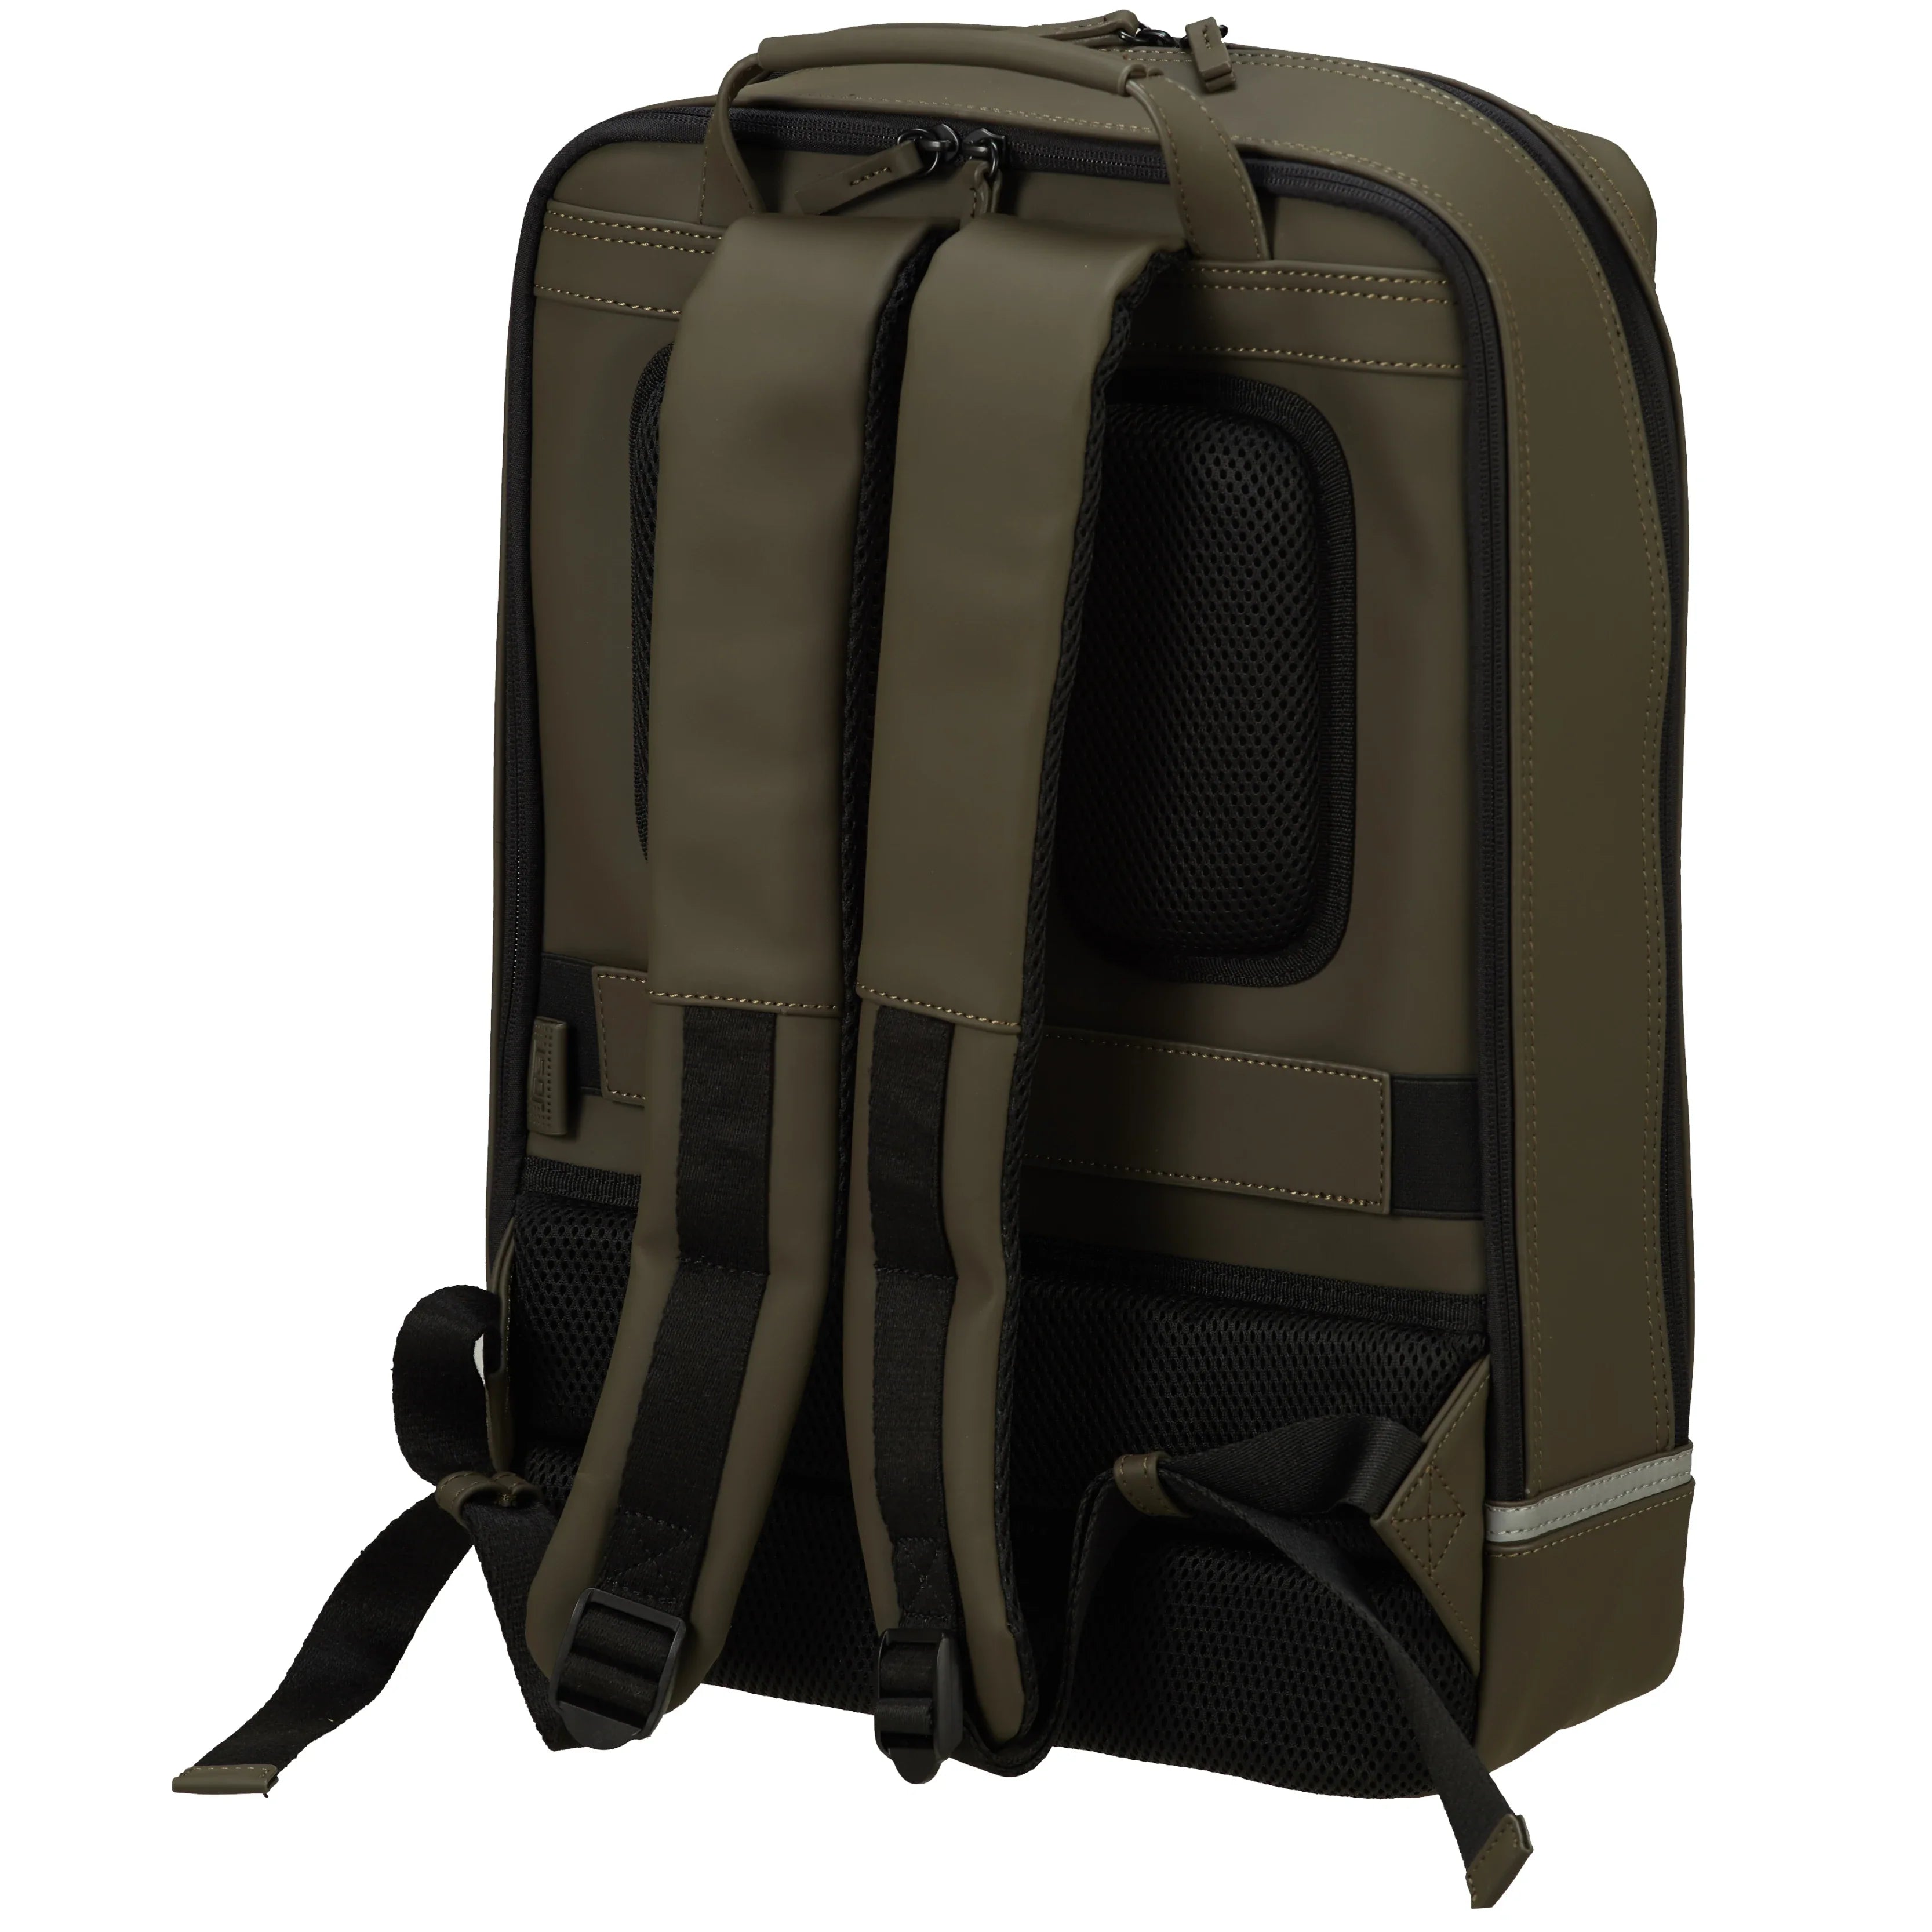 Jost Backpackspecial Daypack sac à dos de loisirs 44 cm - olive